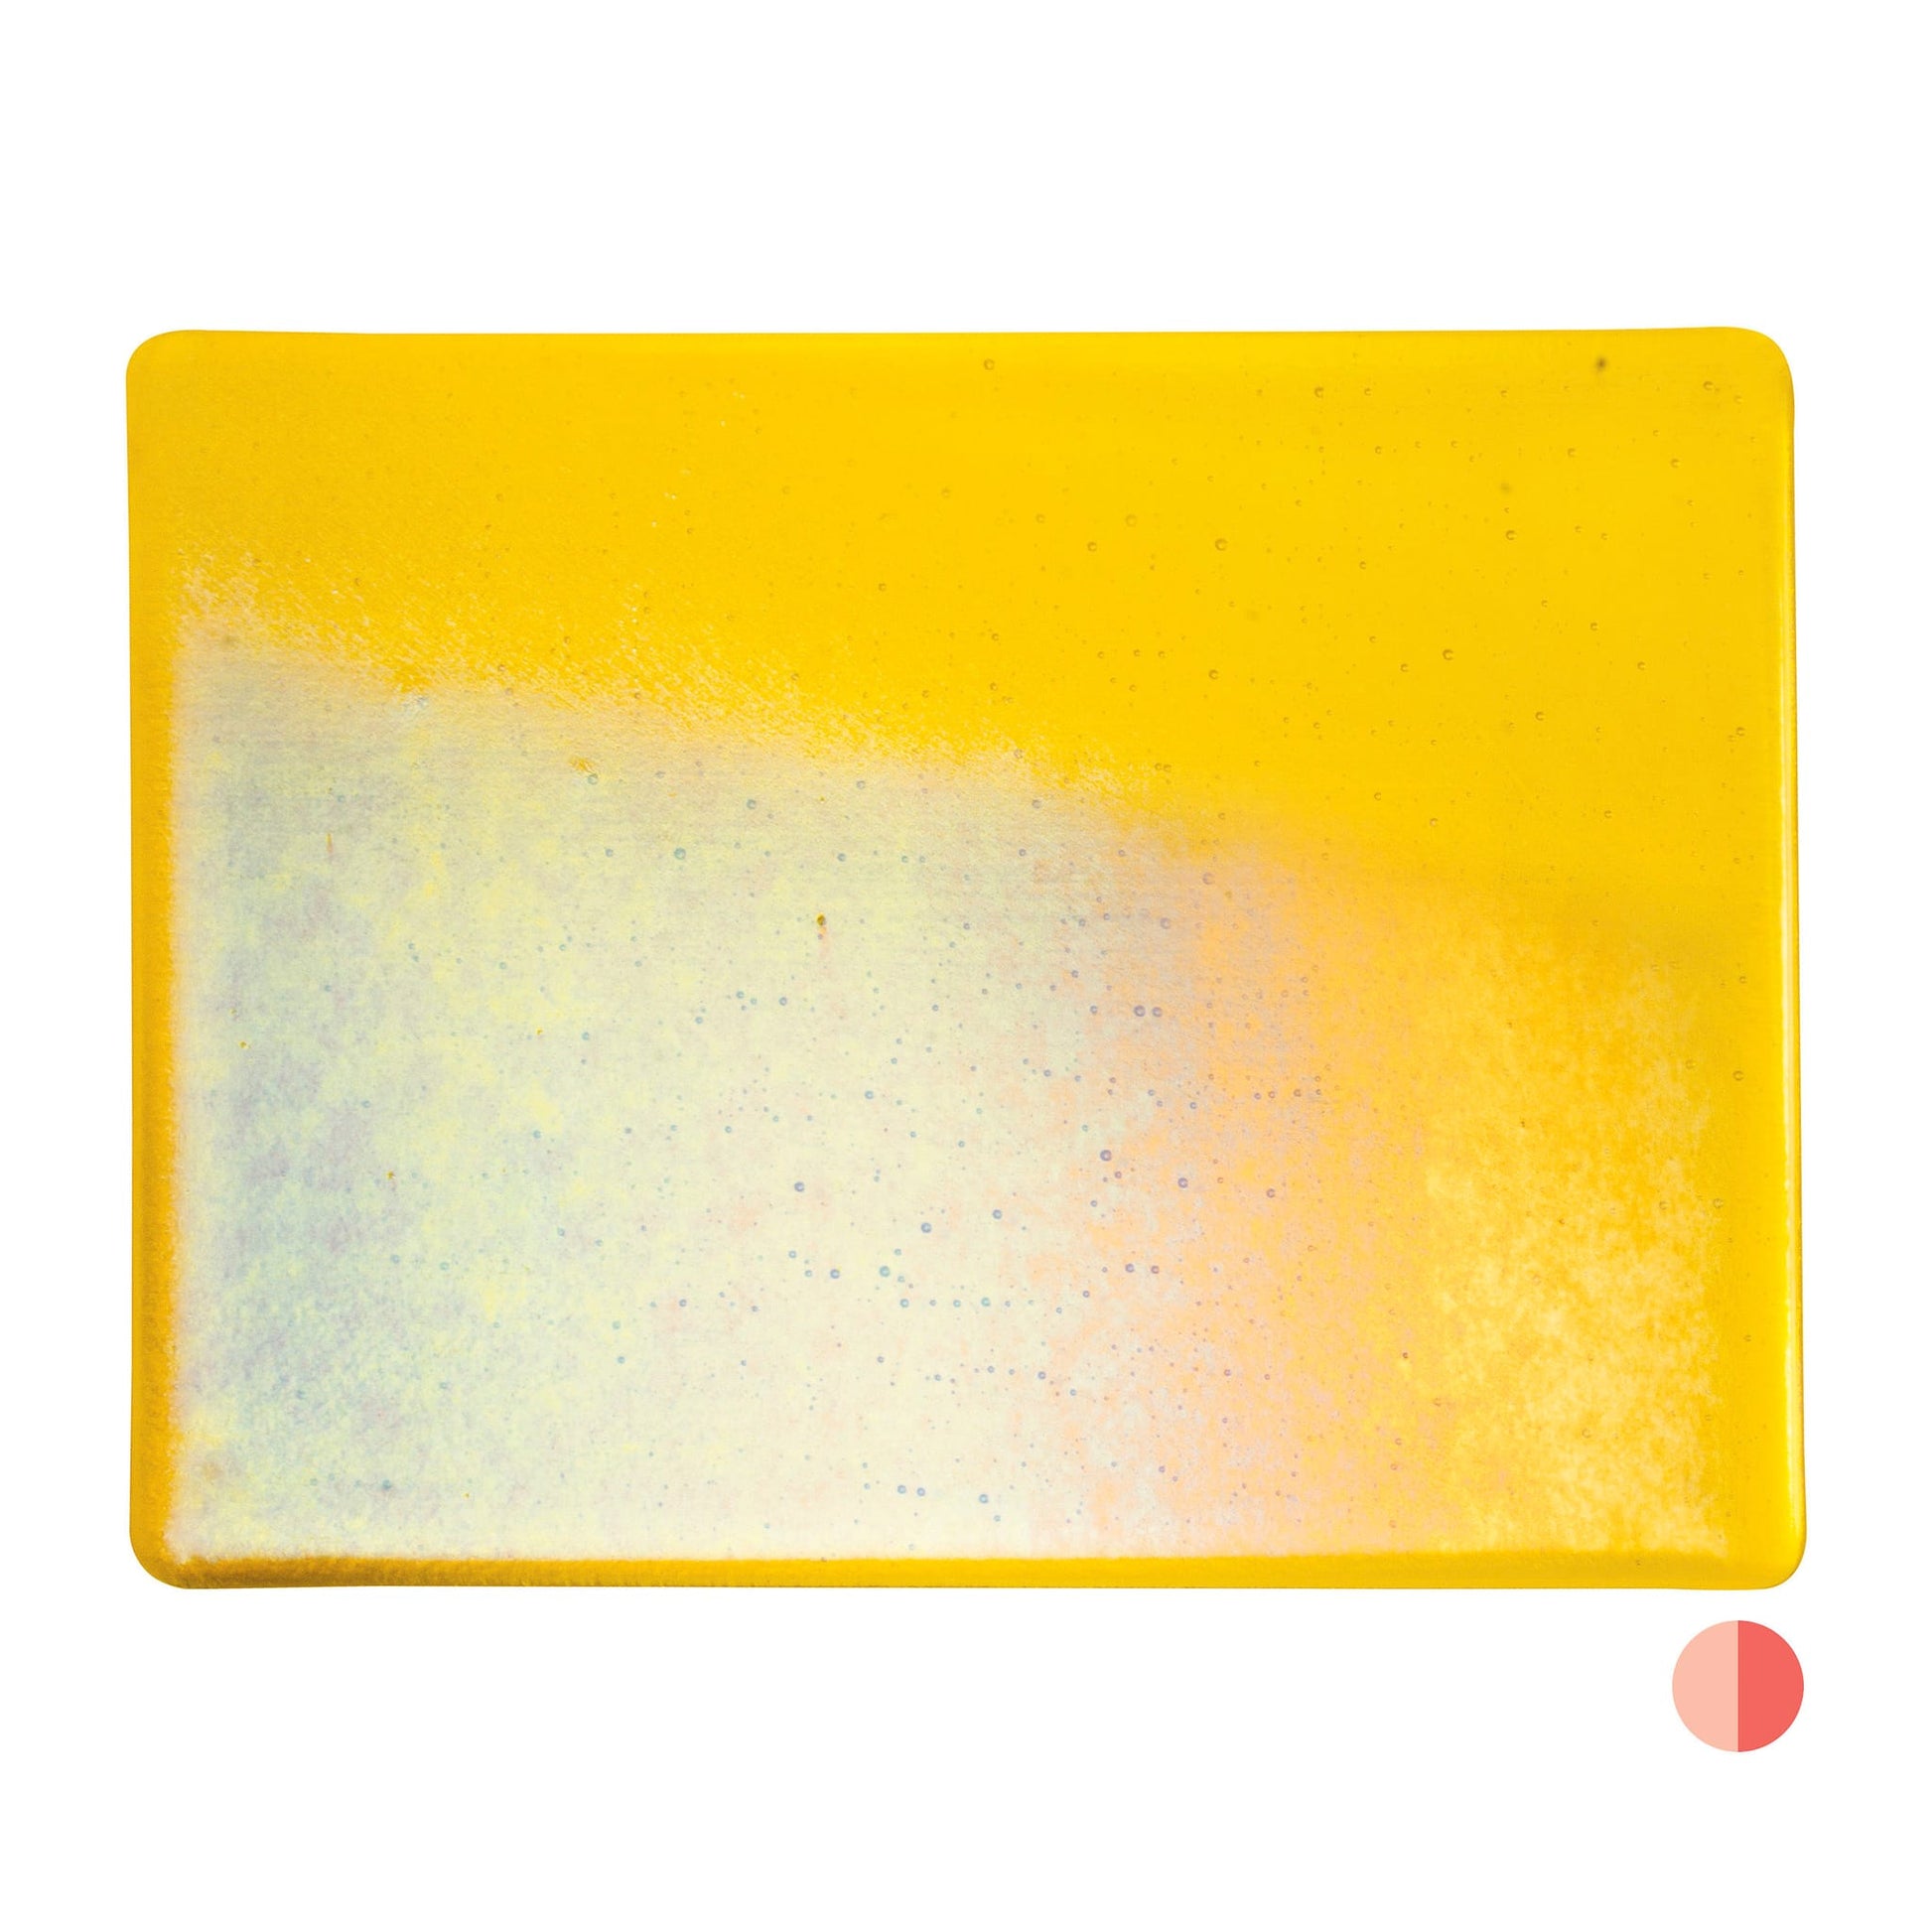 Bullseye COE90 Fusing Glass 001120 Yellow, Iridescent, Rainbow Handy Sheet